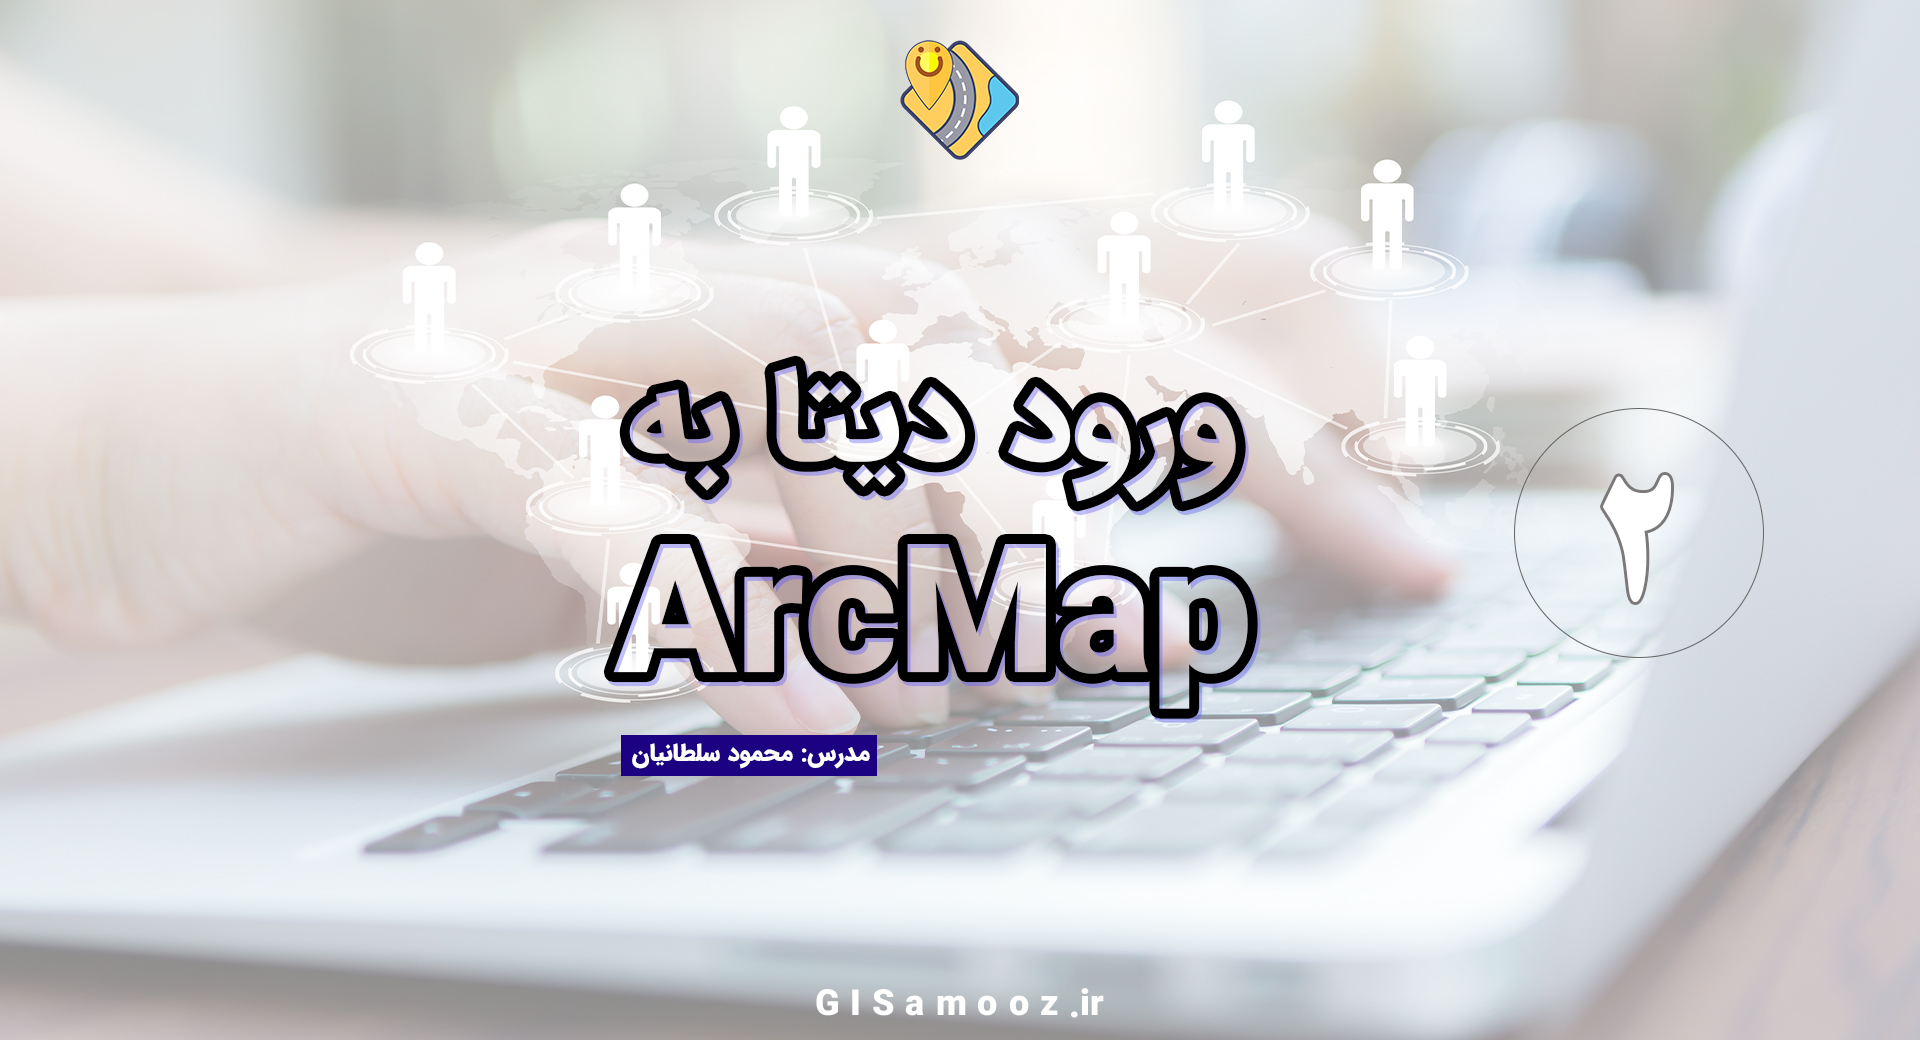 آموزش Add data در نرم افزار ArcMap